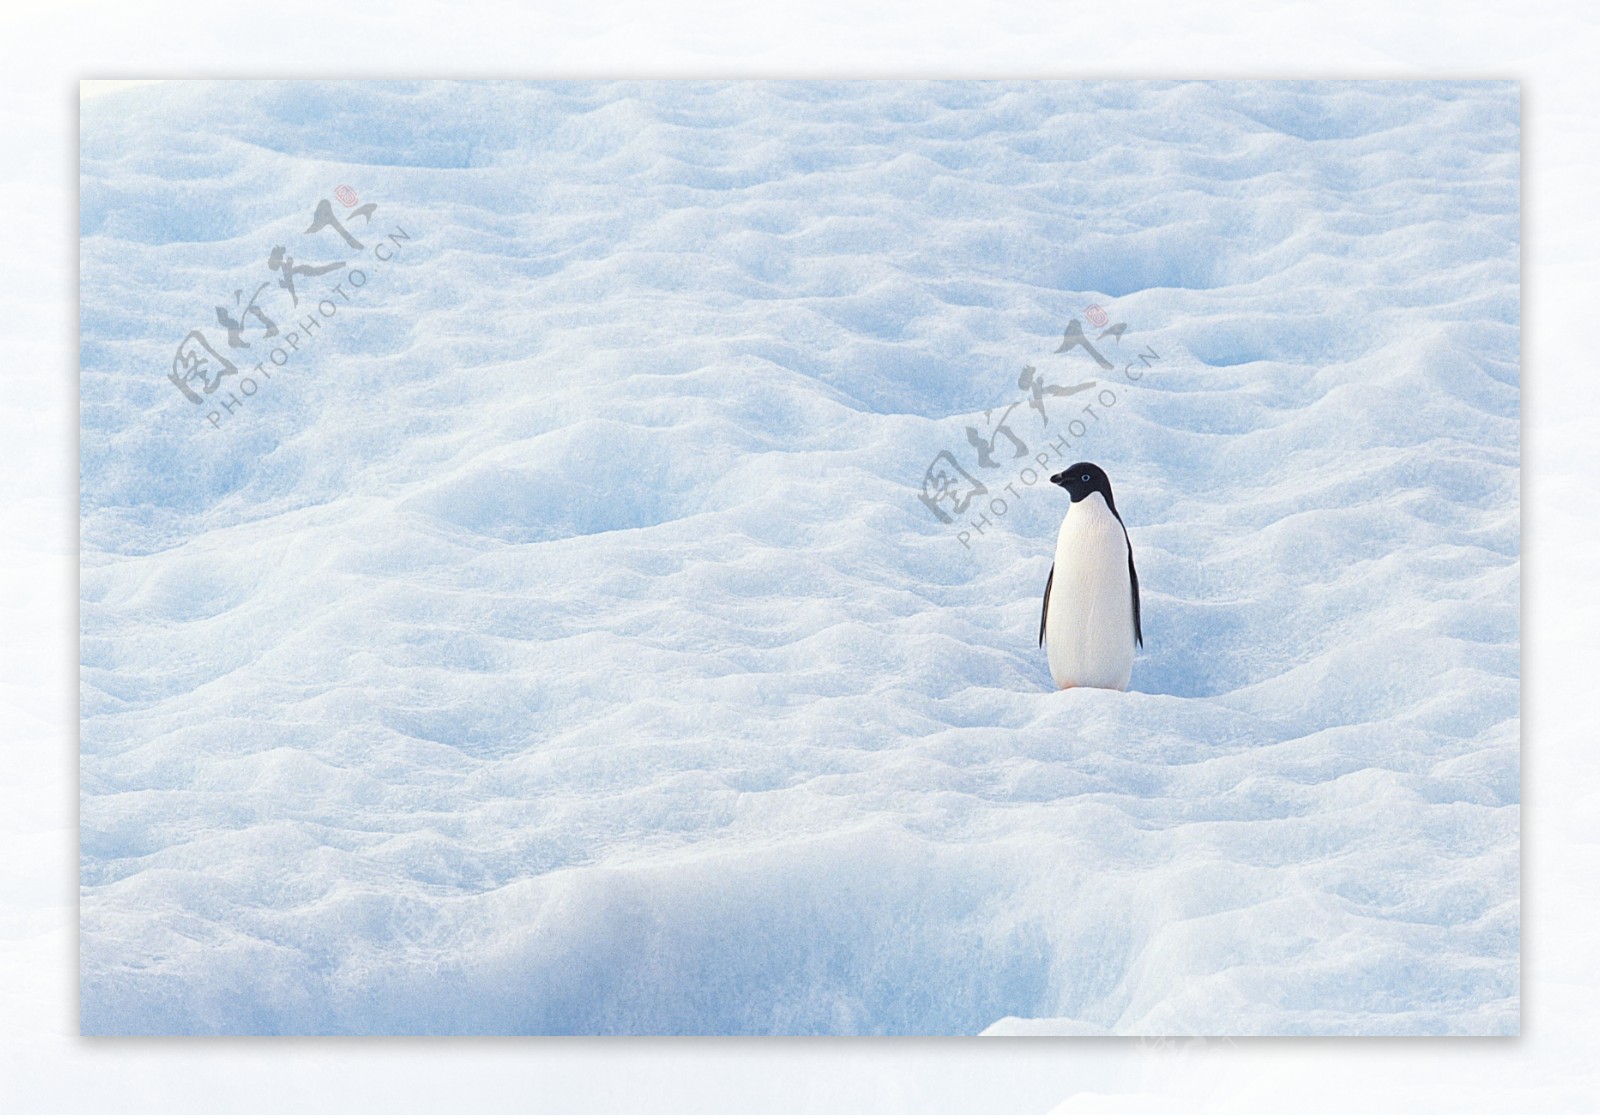 南极冰地帝企鹅图片